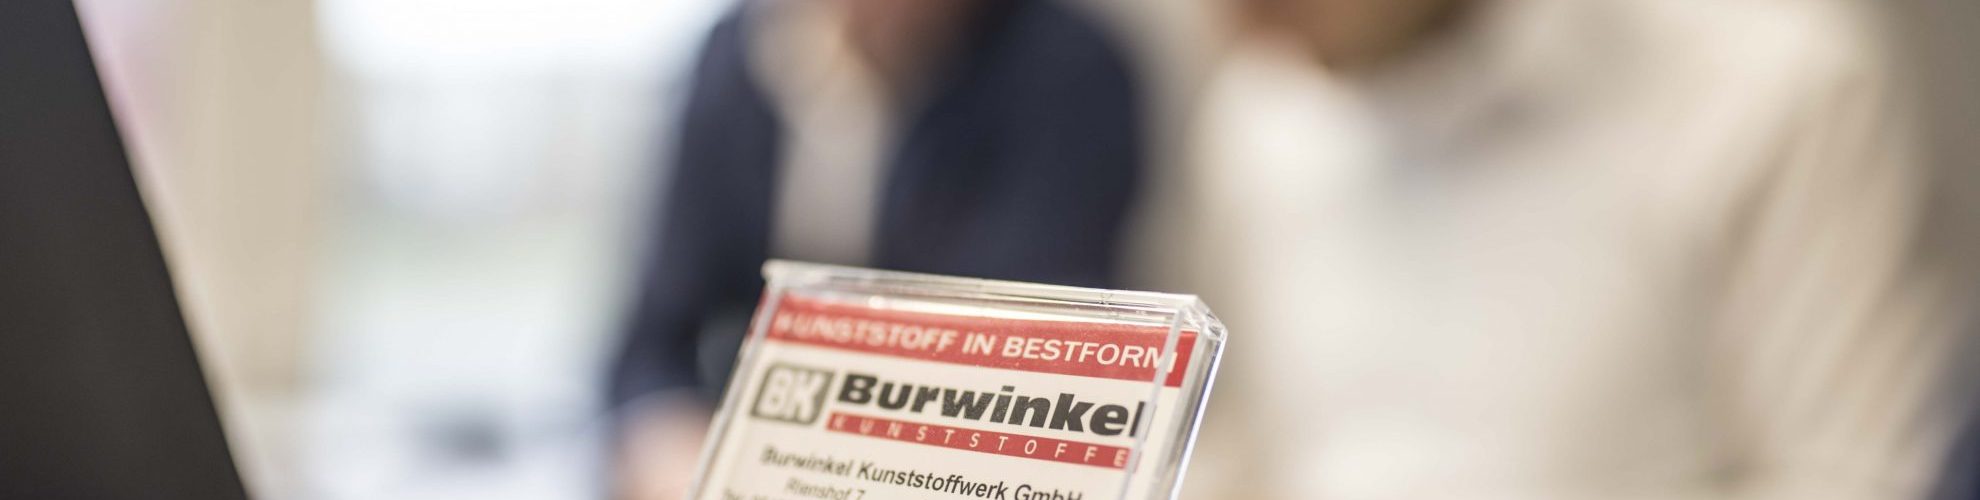 Burwinkel news